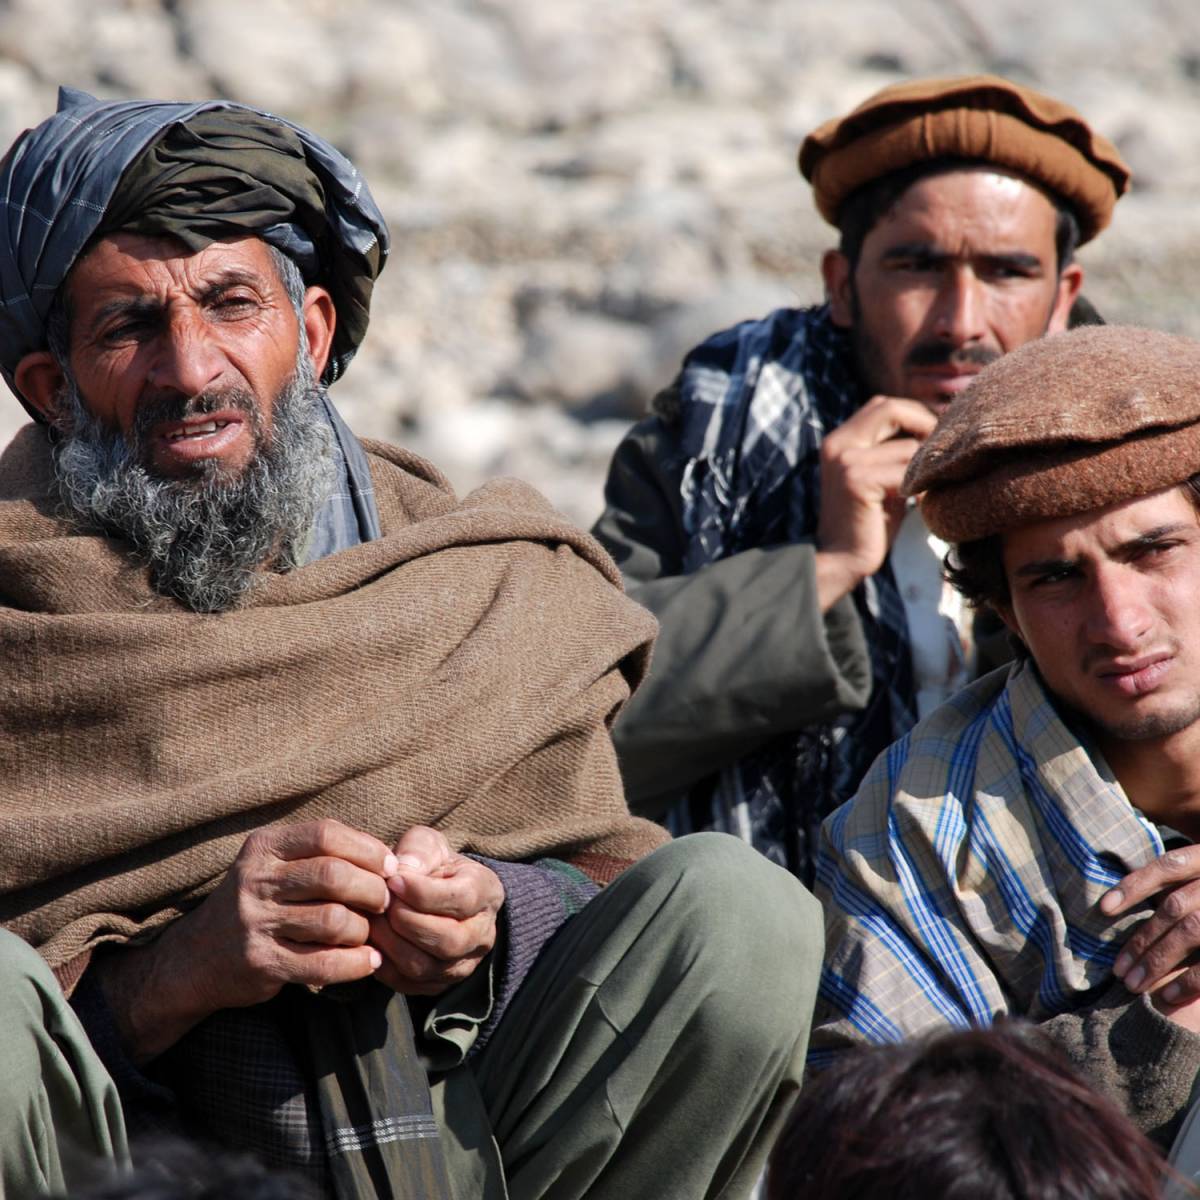 "Талибы опаснее, чем когда-либо". Мировые СМИ о ситуации в Афганистане